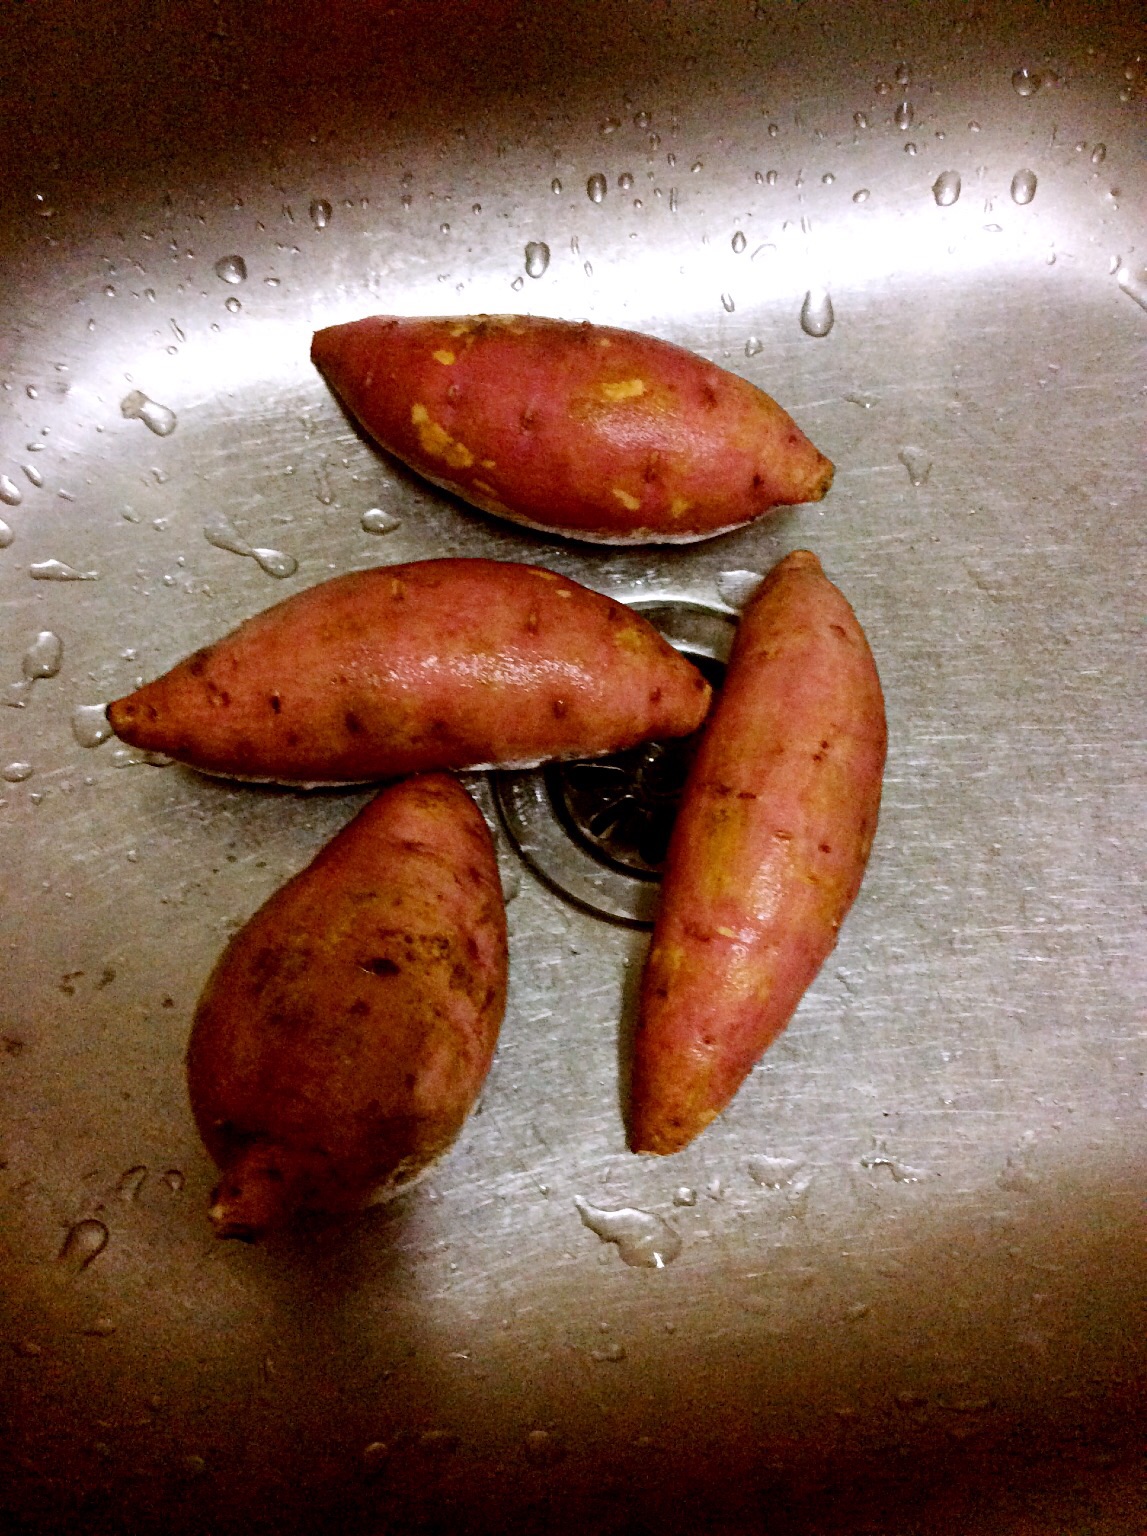 这是我见过颜值最高的蒸红薯，好看的舍不得吃了_哔哩哔哩 (゜-゜)つロ 干杯~-bilibili